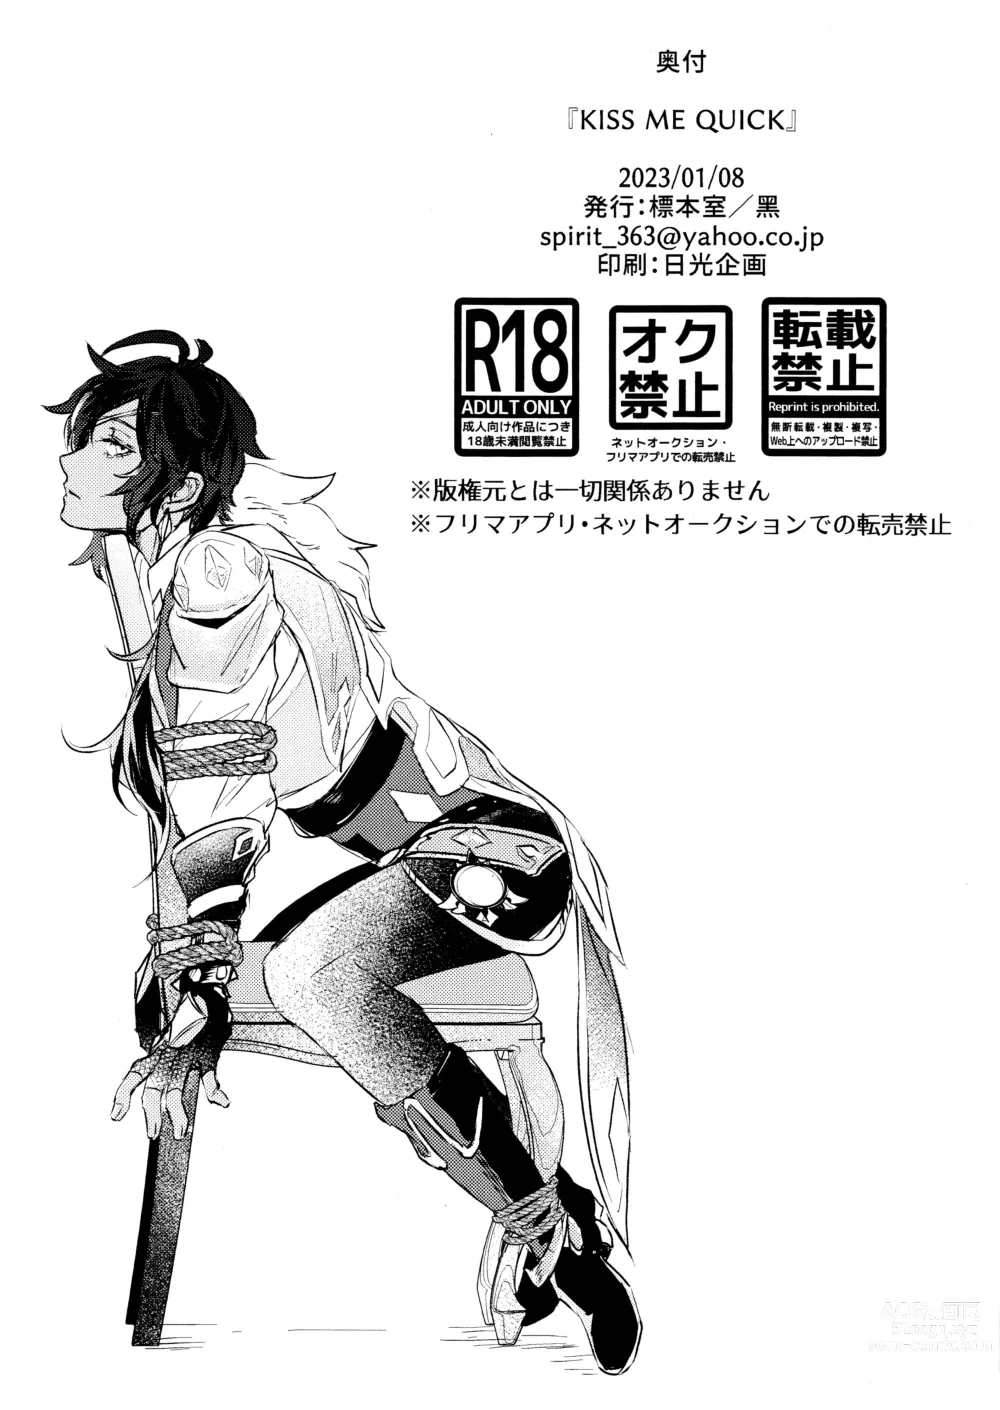 Page 9 of doujinshi Kiss me quick (Genshin Impact) 2023